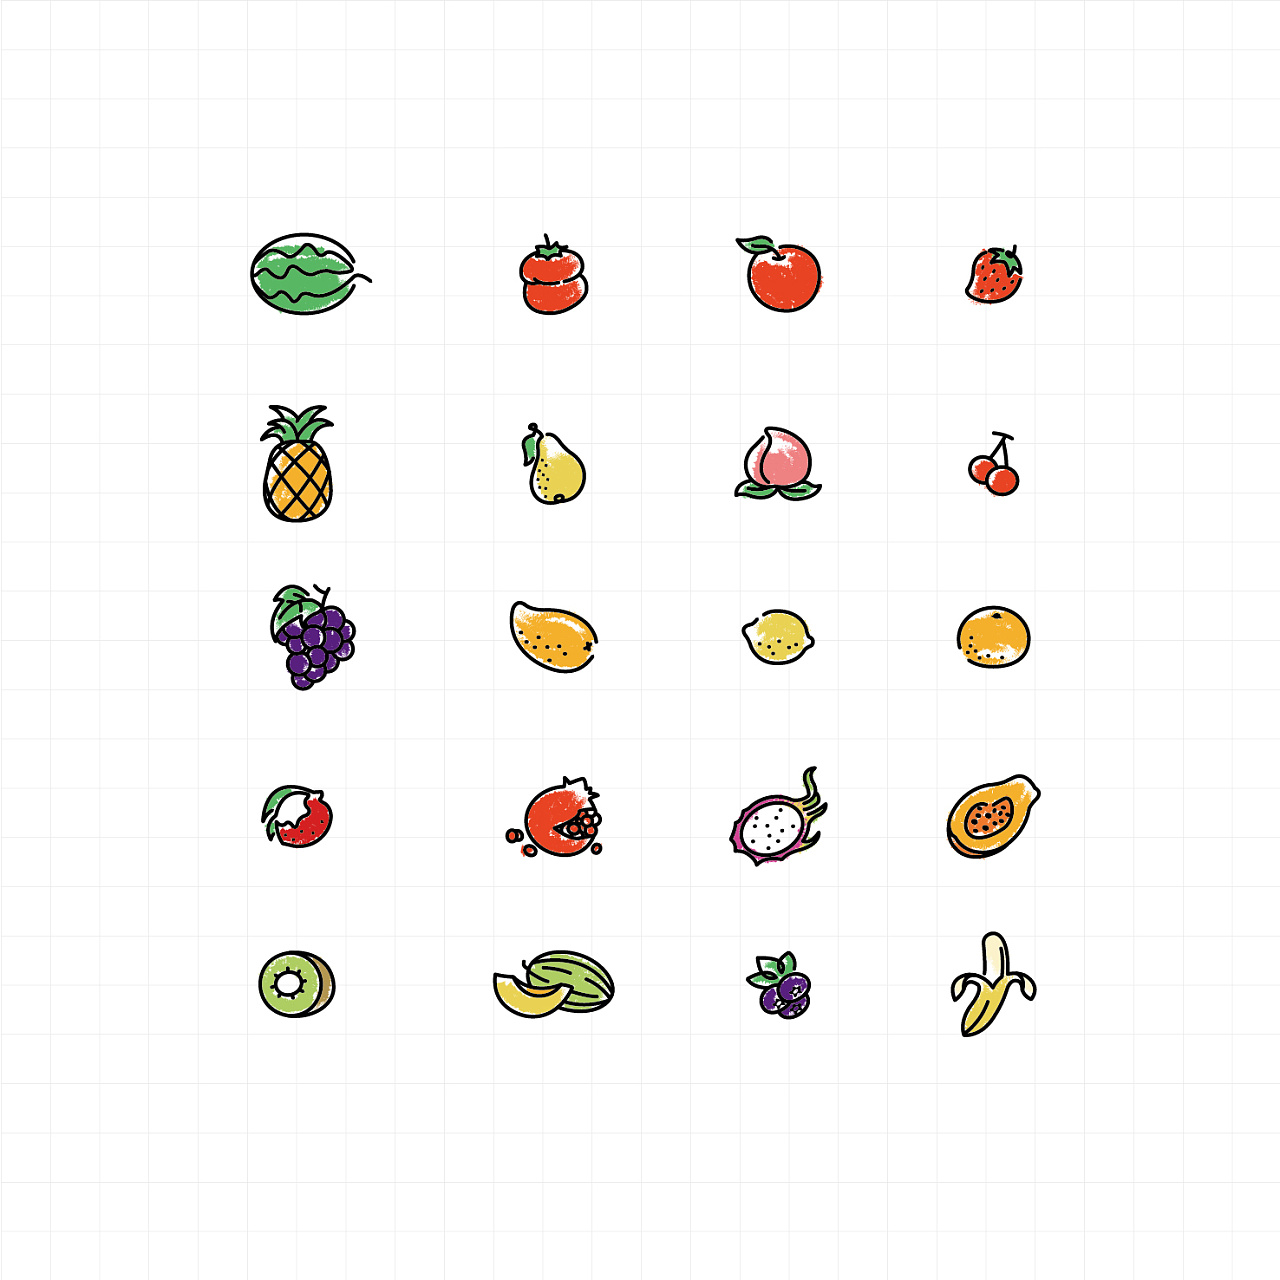 两个彩色西红柿简笔画画法图片步骤（儿童爱国绘画图片大全） - 有点网 - 好手艺